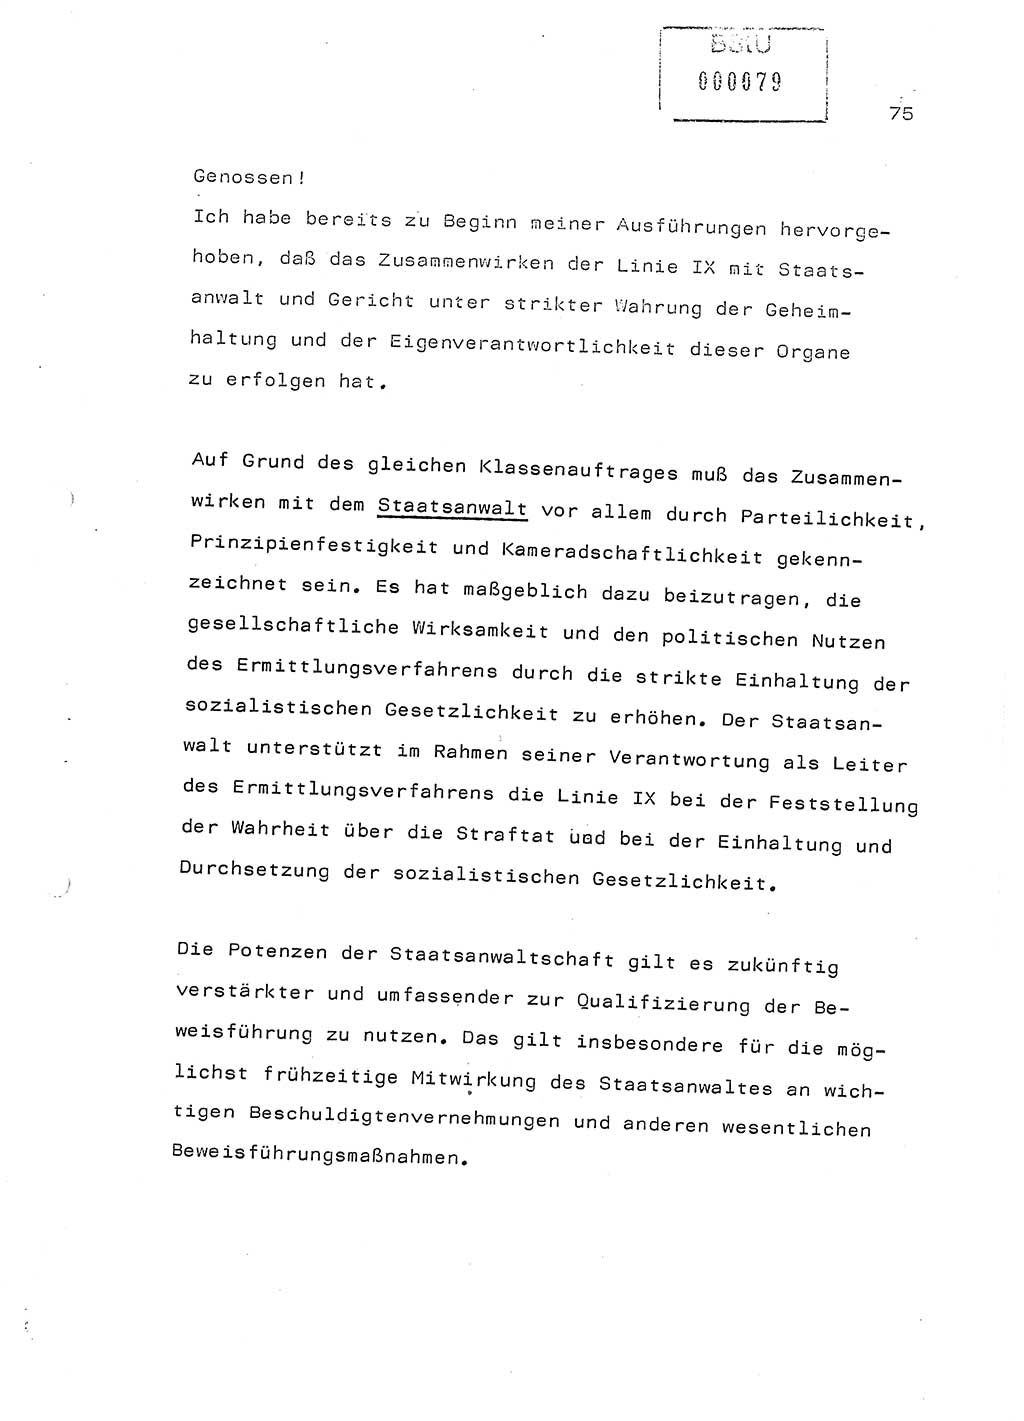 Referat (Generaloberst Erich Mielke) auf der Zentralen Dienstkonferenz am 24.5.1979 [Ministerium für Staatssicherheit (MfS), Deutsche Demokratische Republik (DDR), Der Minister], Berlin 1979, Seite 75 (Ref. DK DDR MfS Min. /79 1979, S. 75)